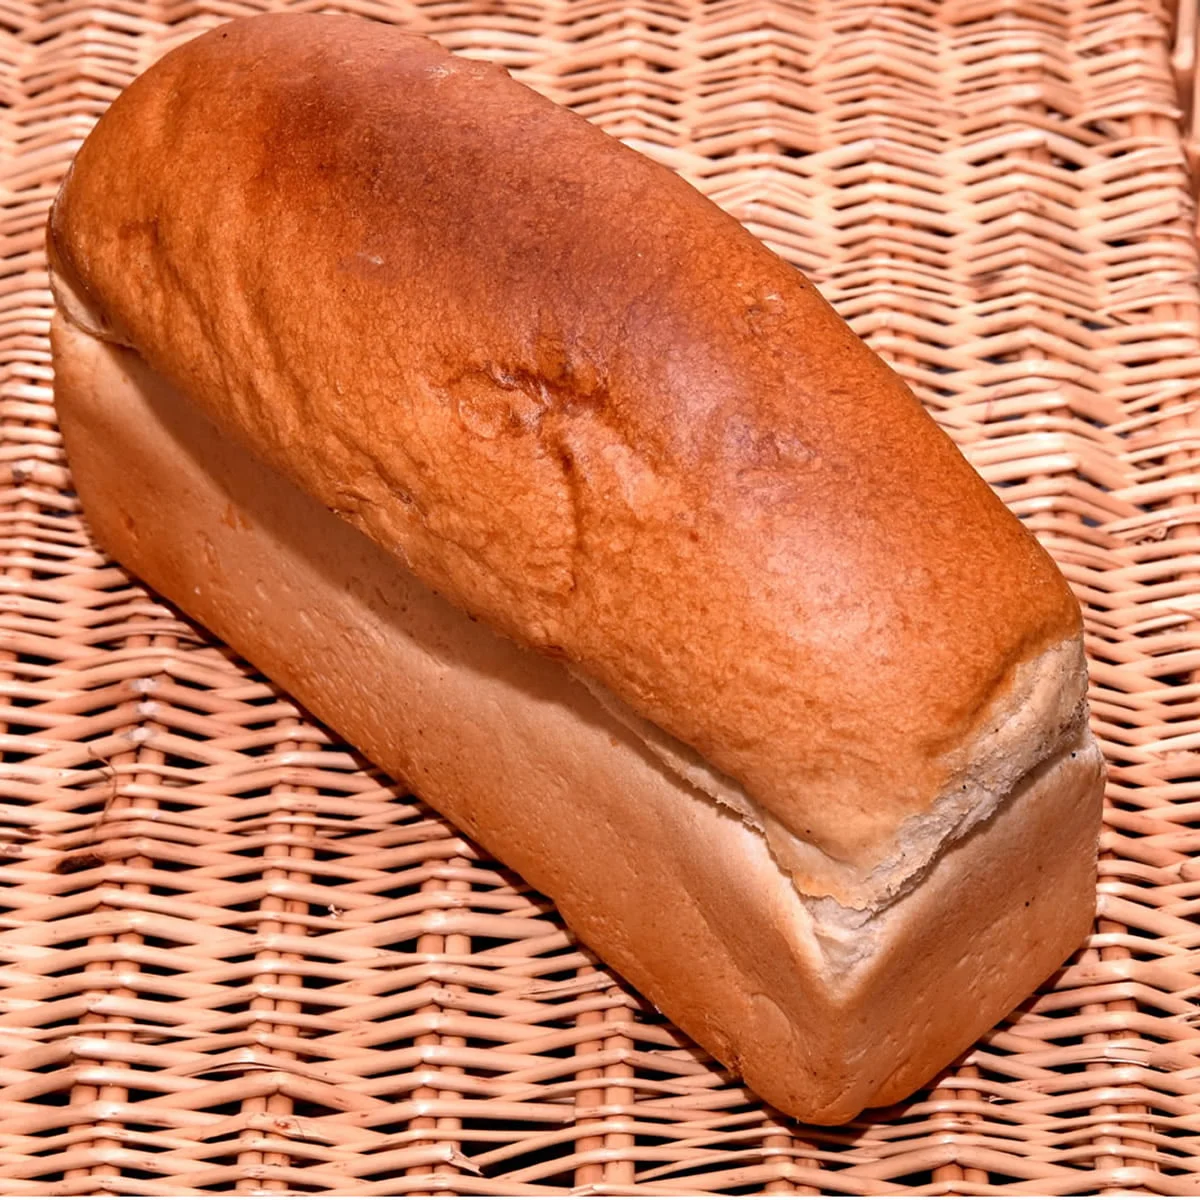 Large White Loaf